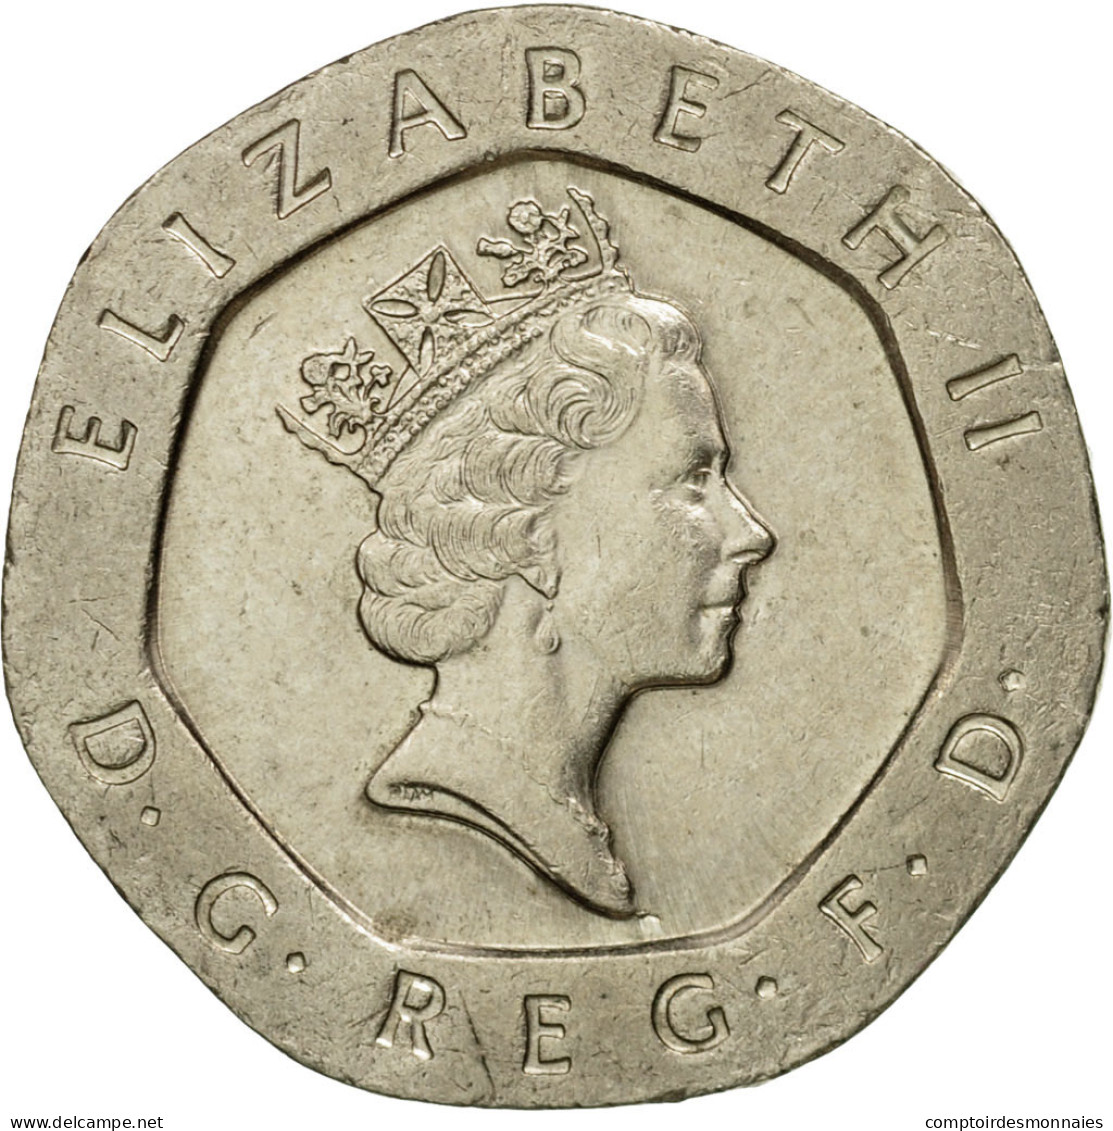 Monnaie, Grande-Bretagne, Elizabeth II, 20 Pence, 1994, TTB, Copper-nickel - 20 Pence